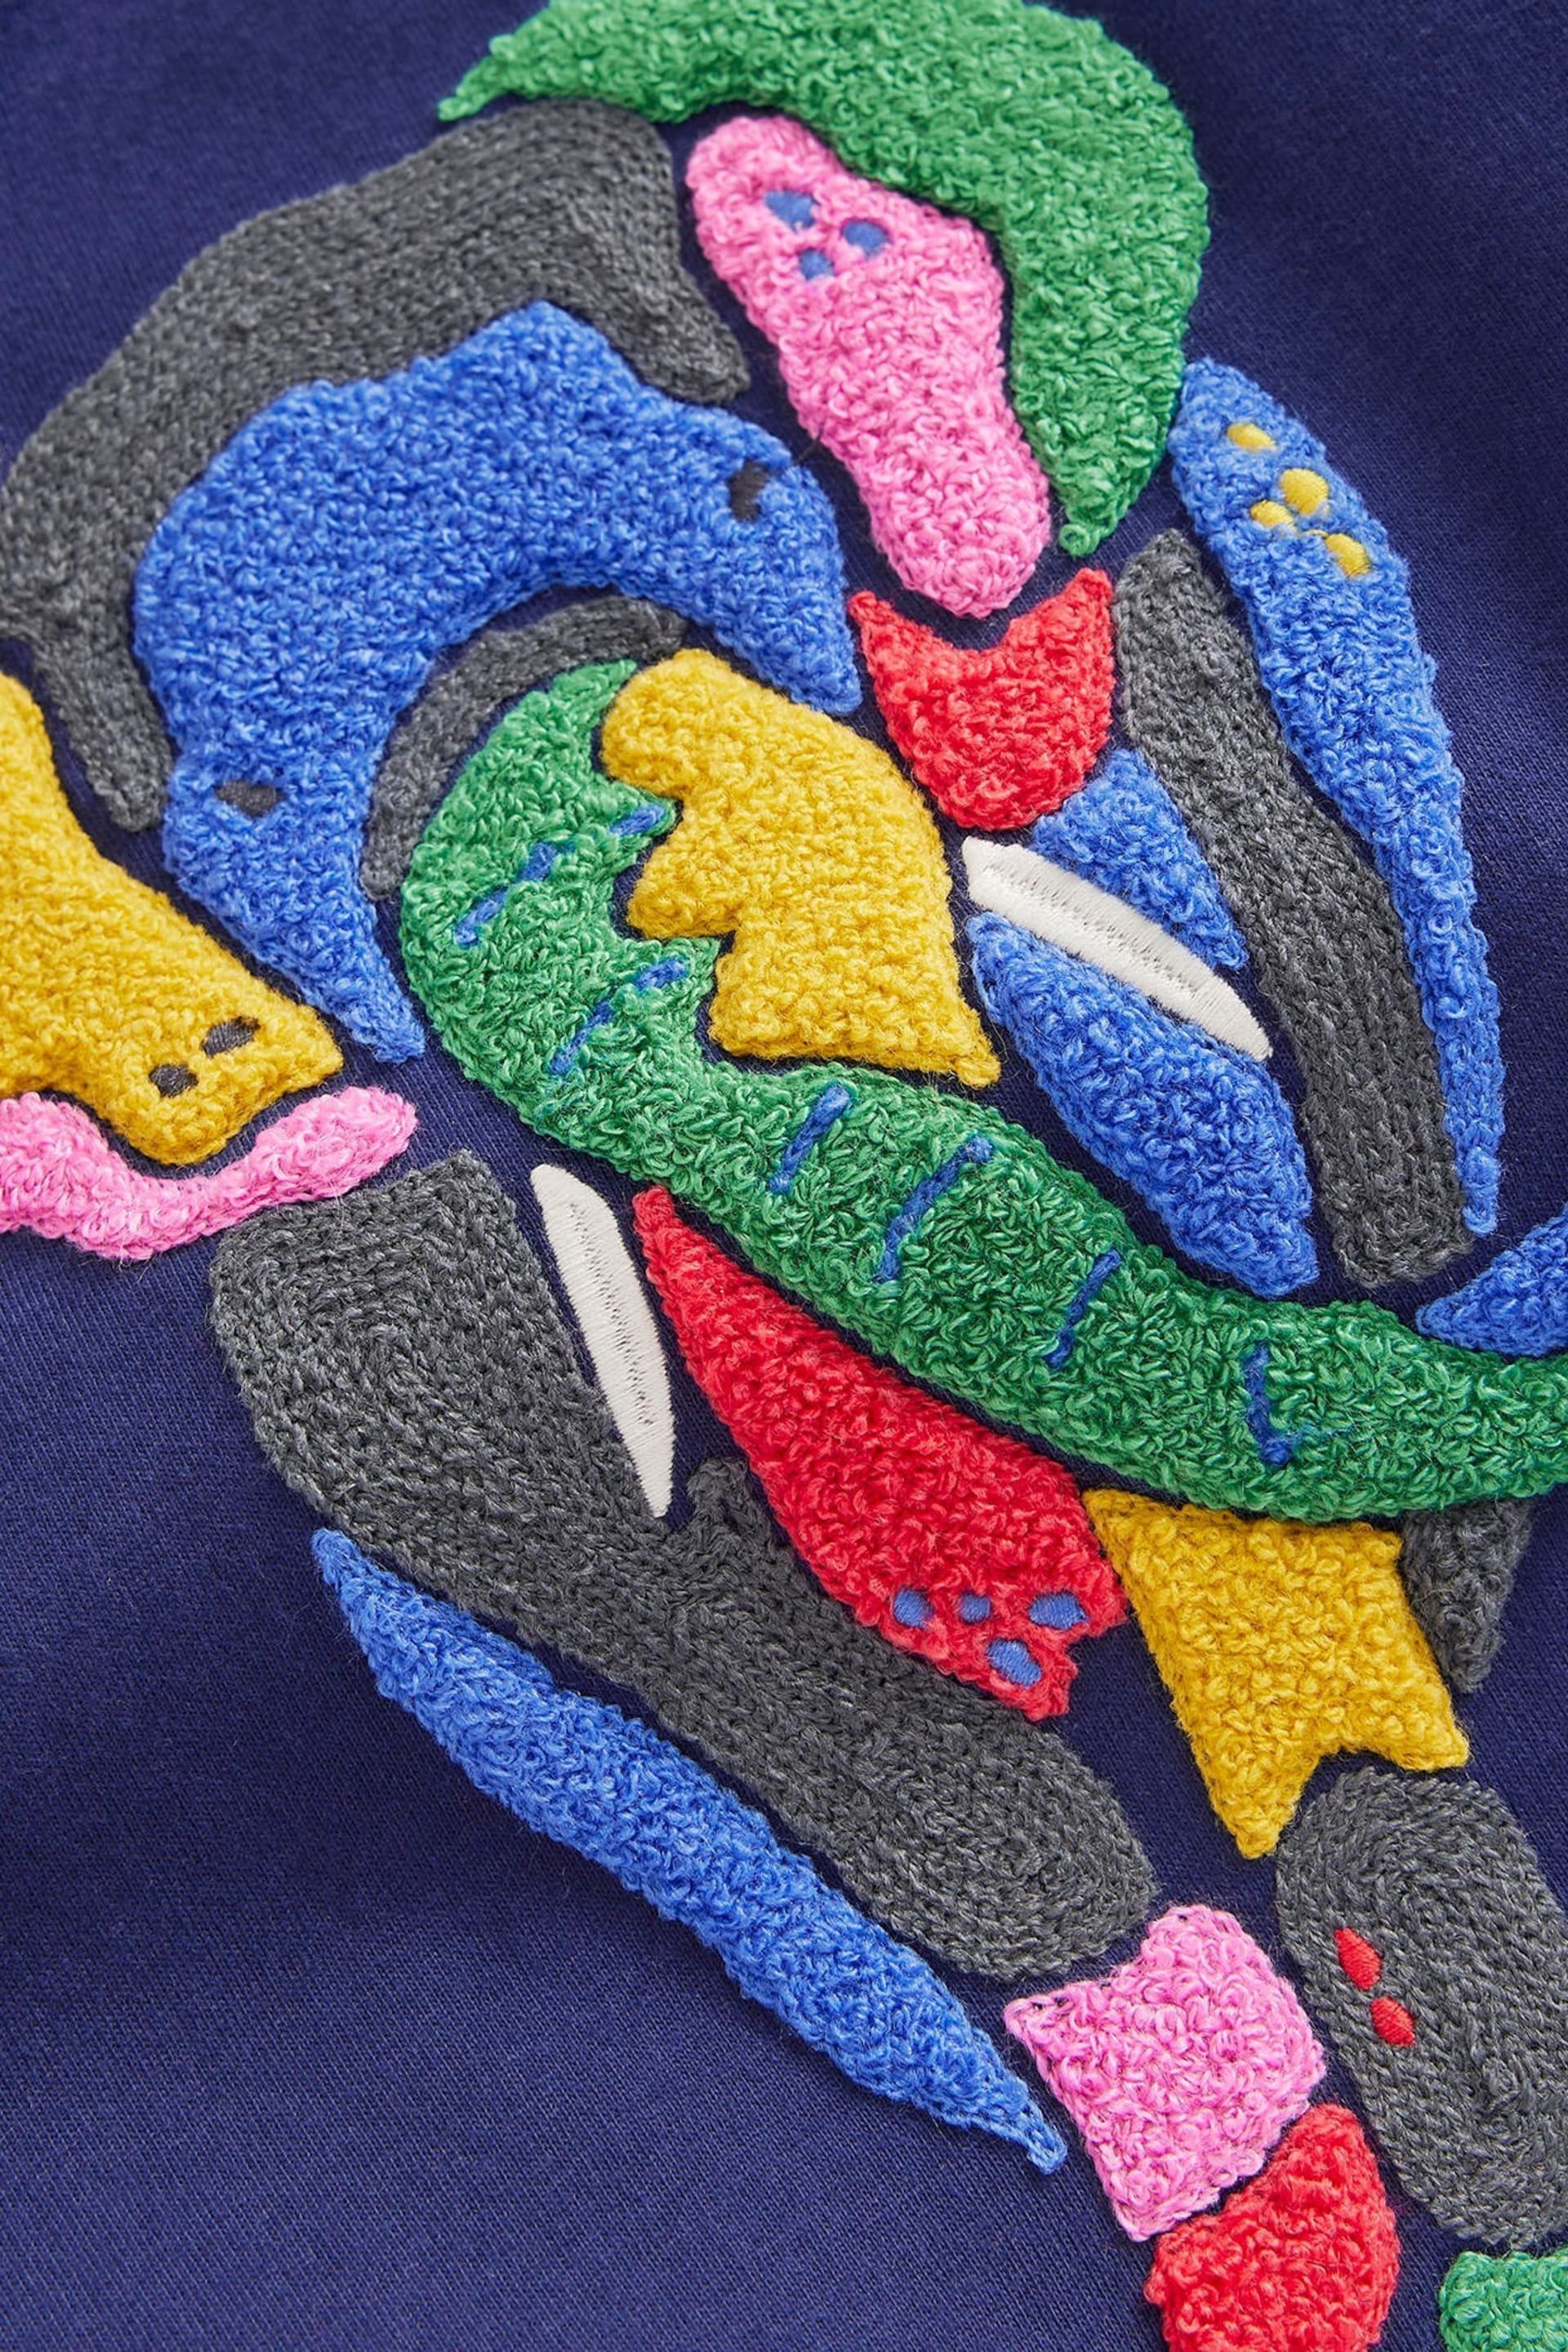 Boden Blue Dark Chainstitch Animal Print T-Shirt - Image 4 of 4